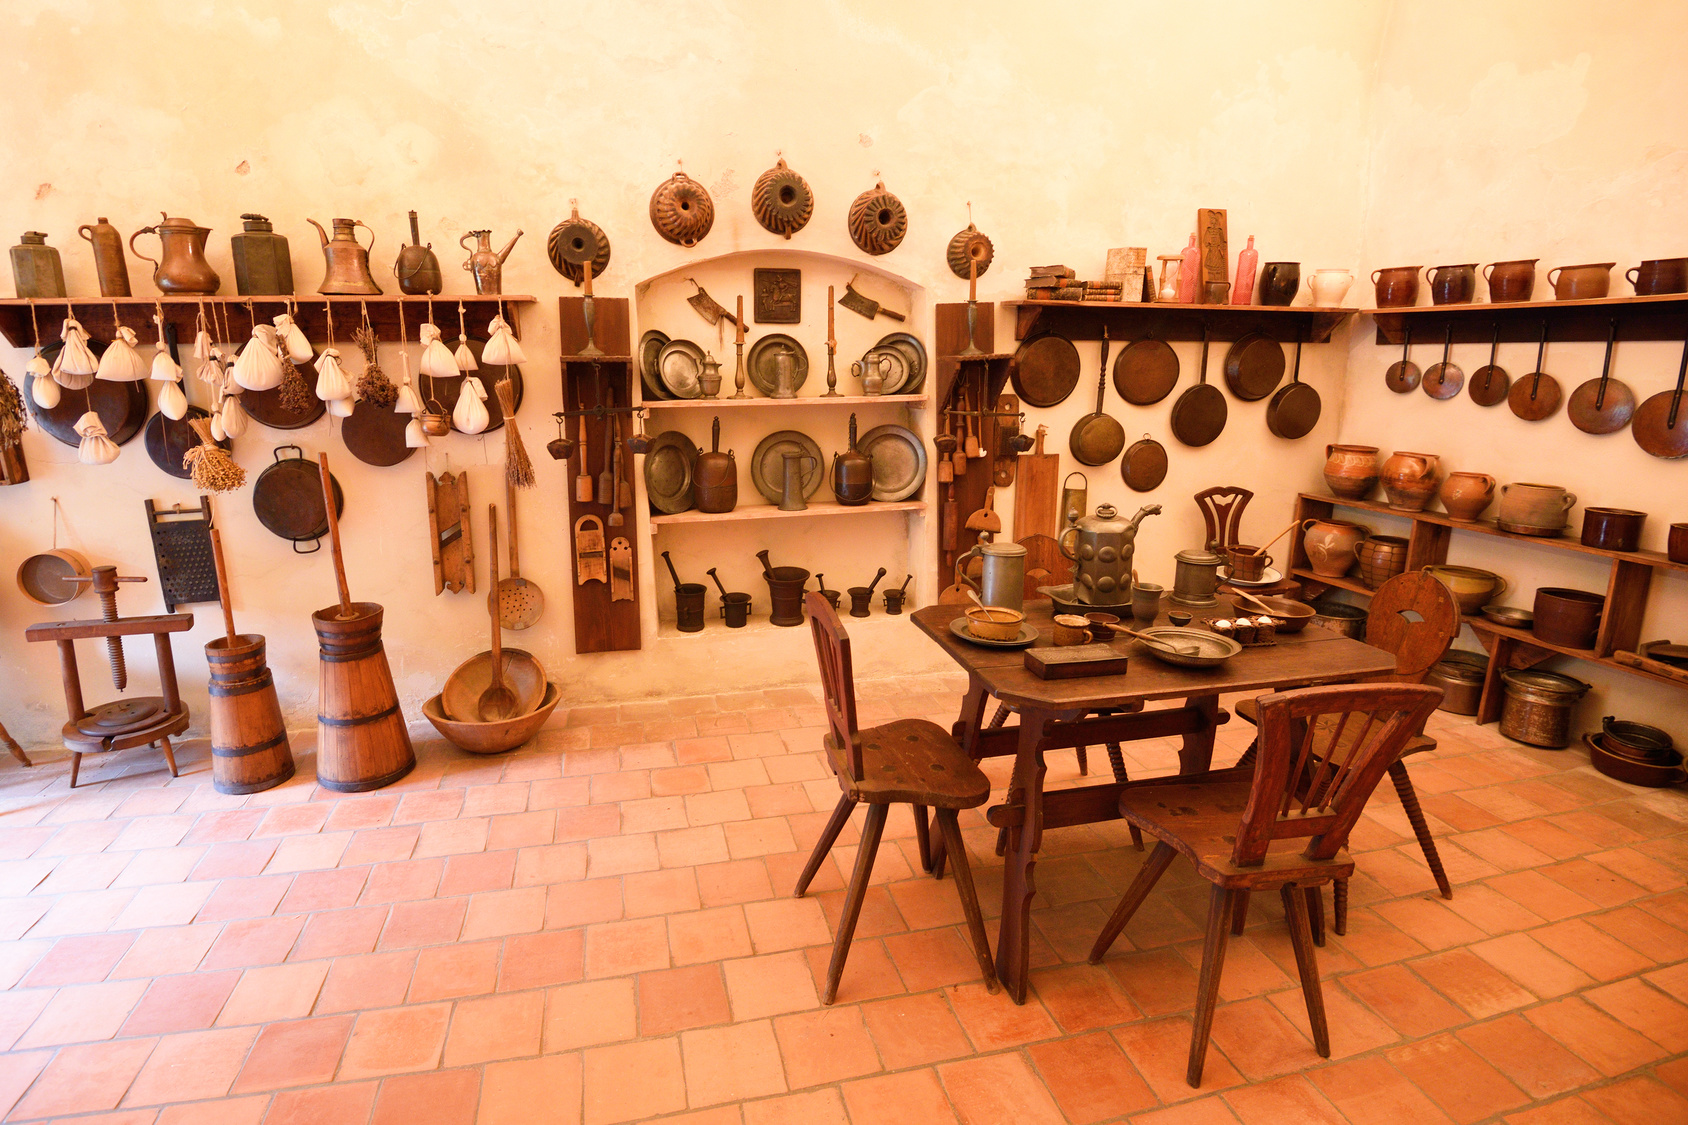 Les divers objets présents dans les cuisines au Moyen Âge. ©&nbsp;grondetphoto, fotolia